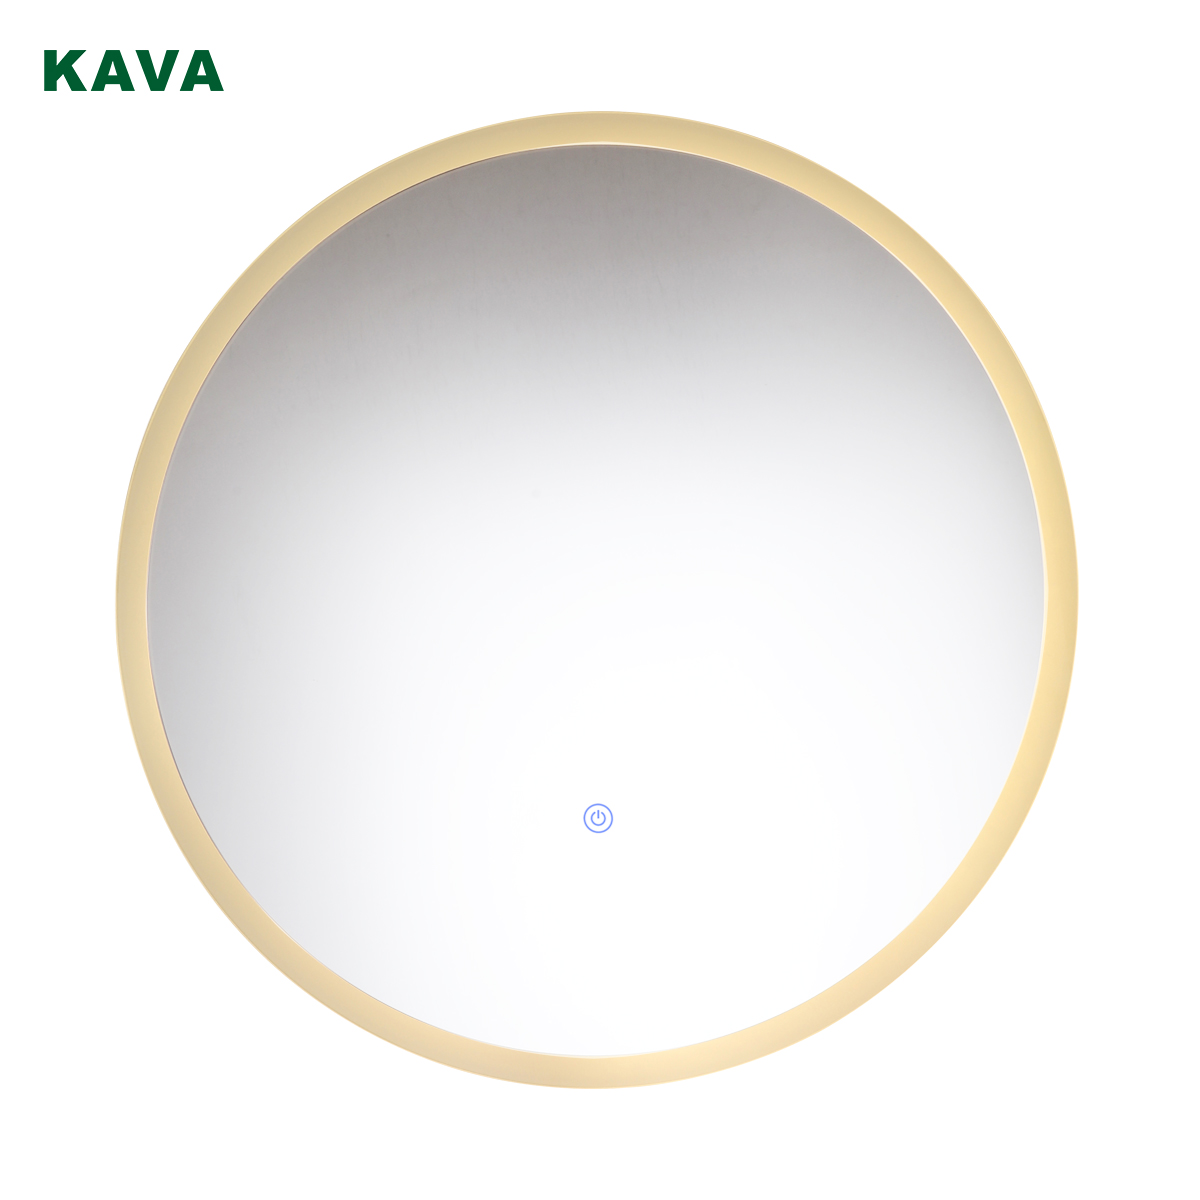 Kava-lighting-vanity-light-turn-on-KMV6008M